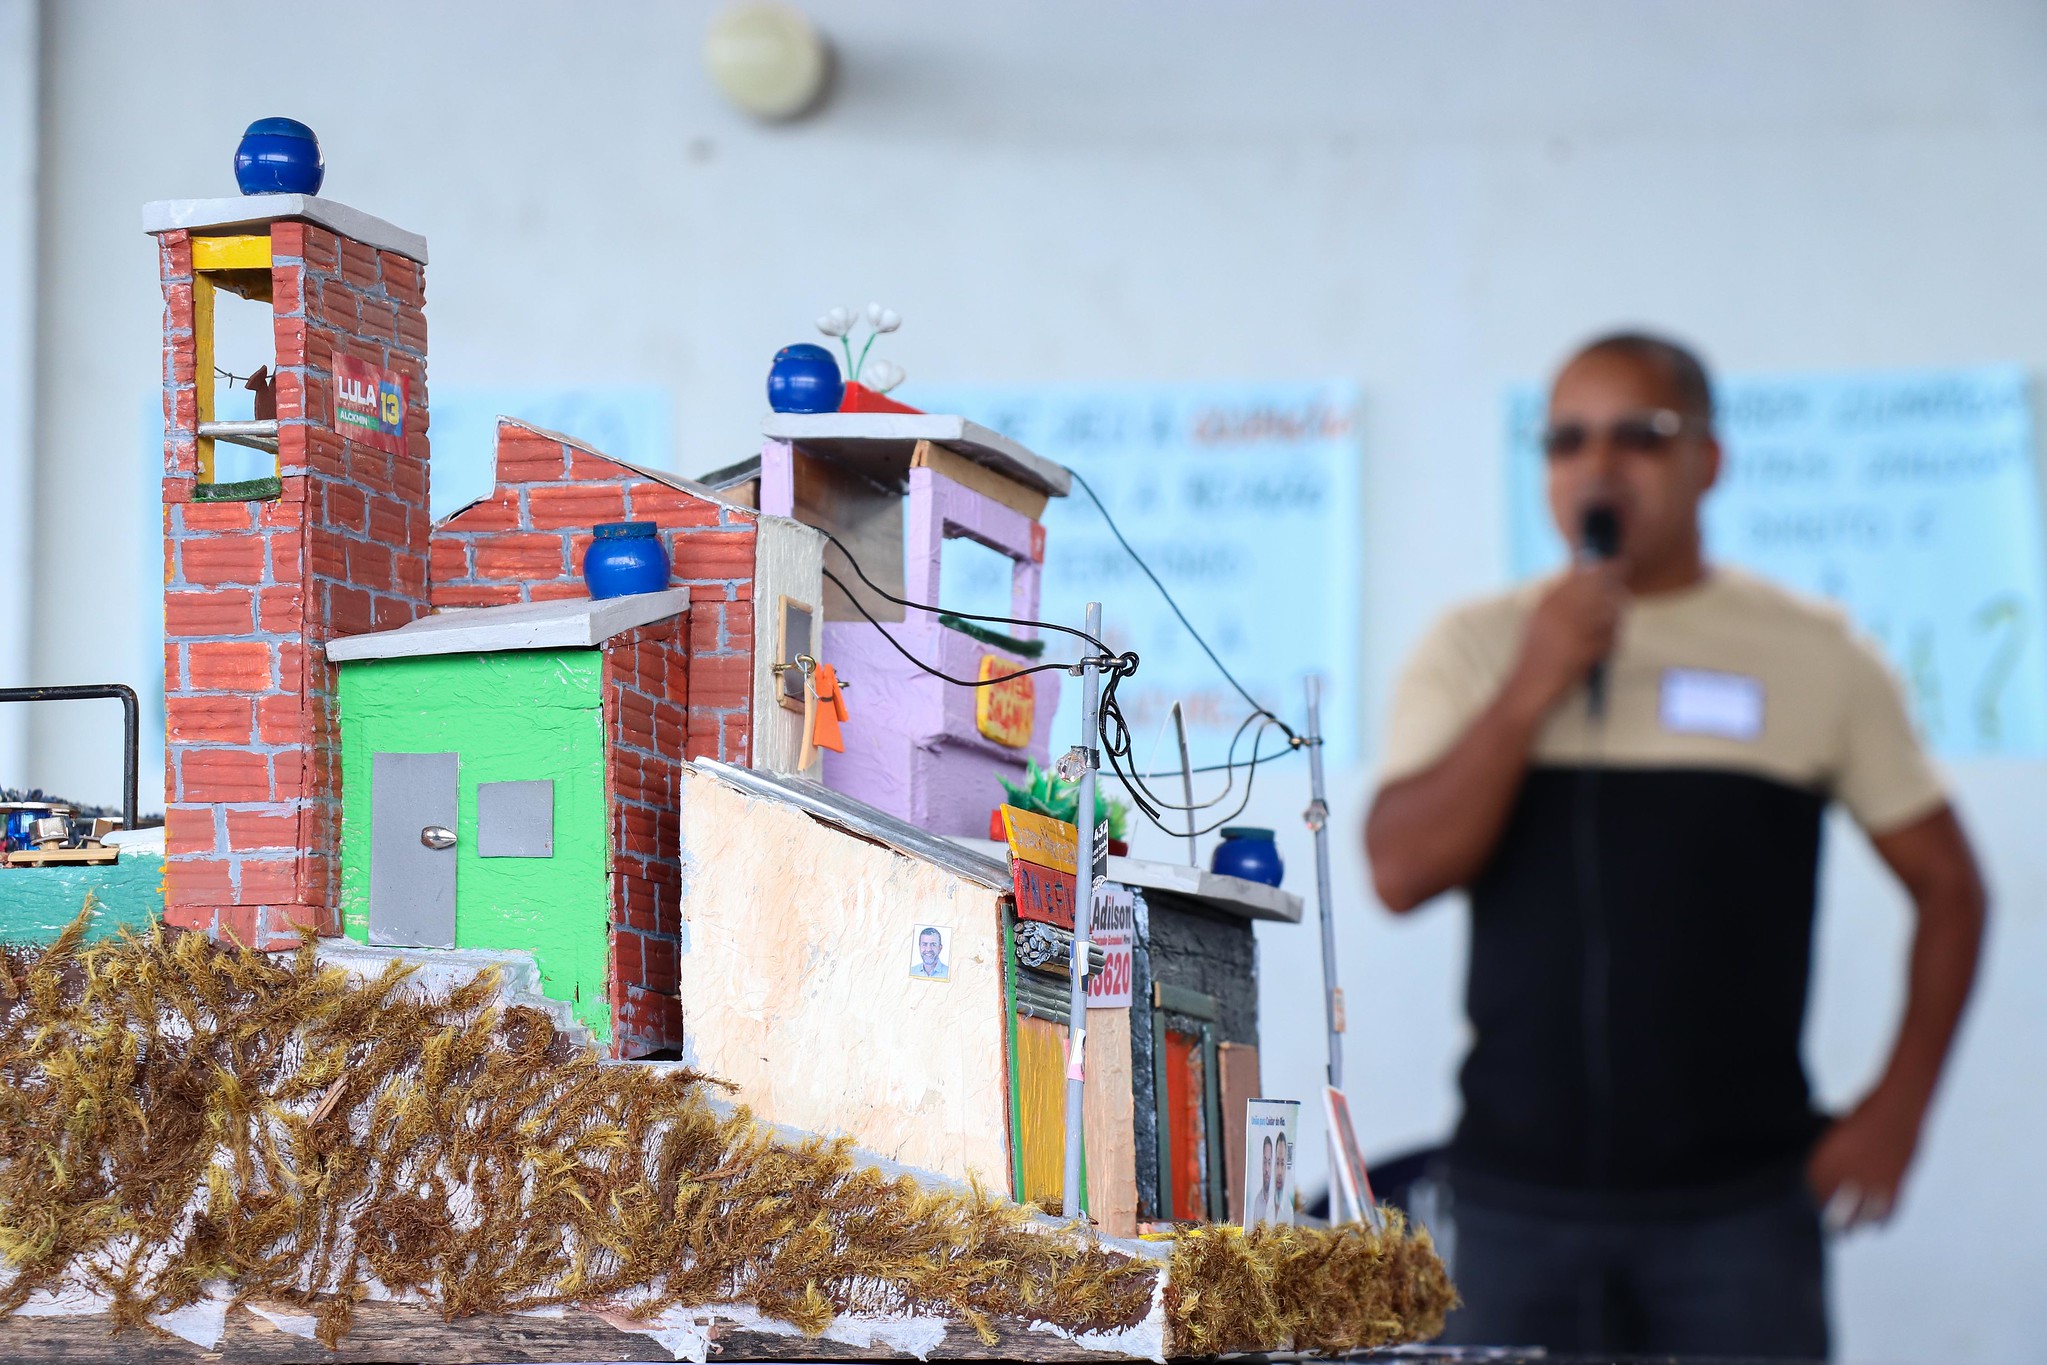 Maquete, feita de material reciclável, representando uma favela, produzida por Evânia, ex-moradora do Vidigal, em parceria com PUC-Arte Rio. Foto: Alexandre Cerqueira